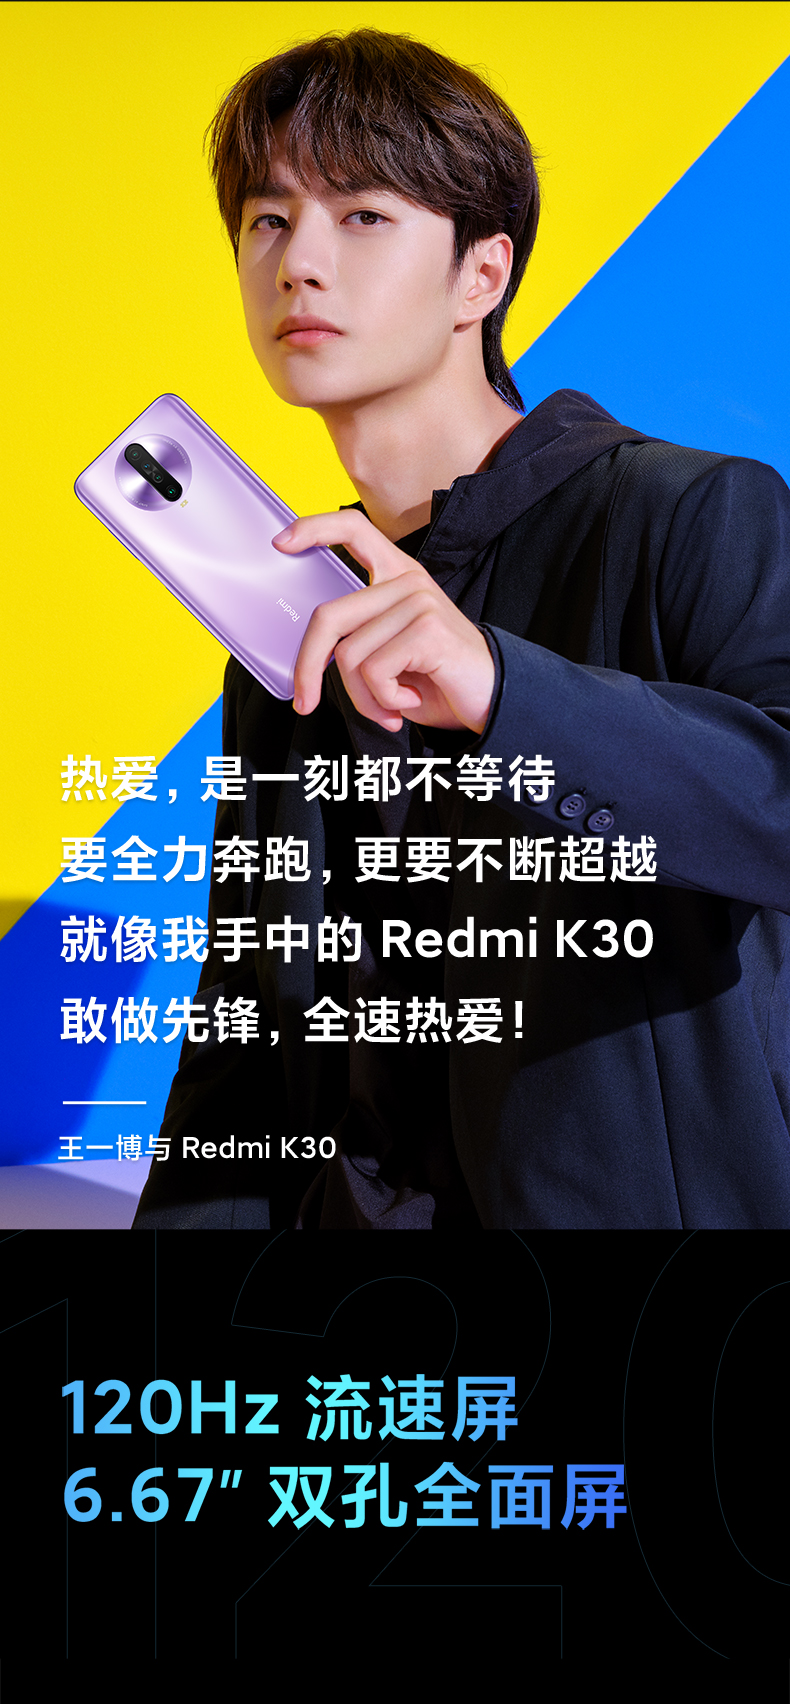 【全网首发】Redmi K30手机免费试用,评测